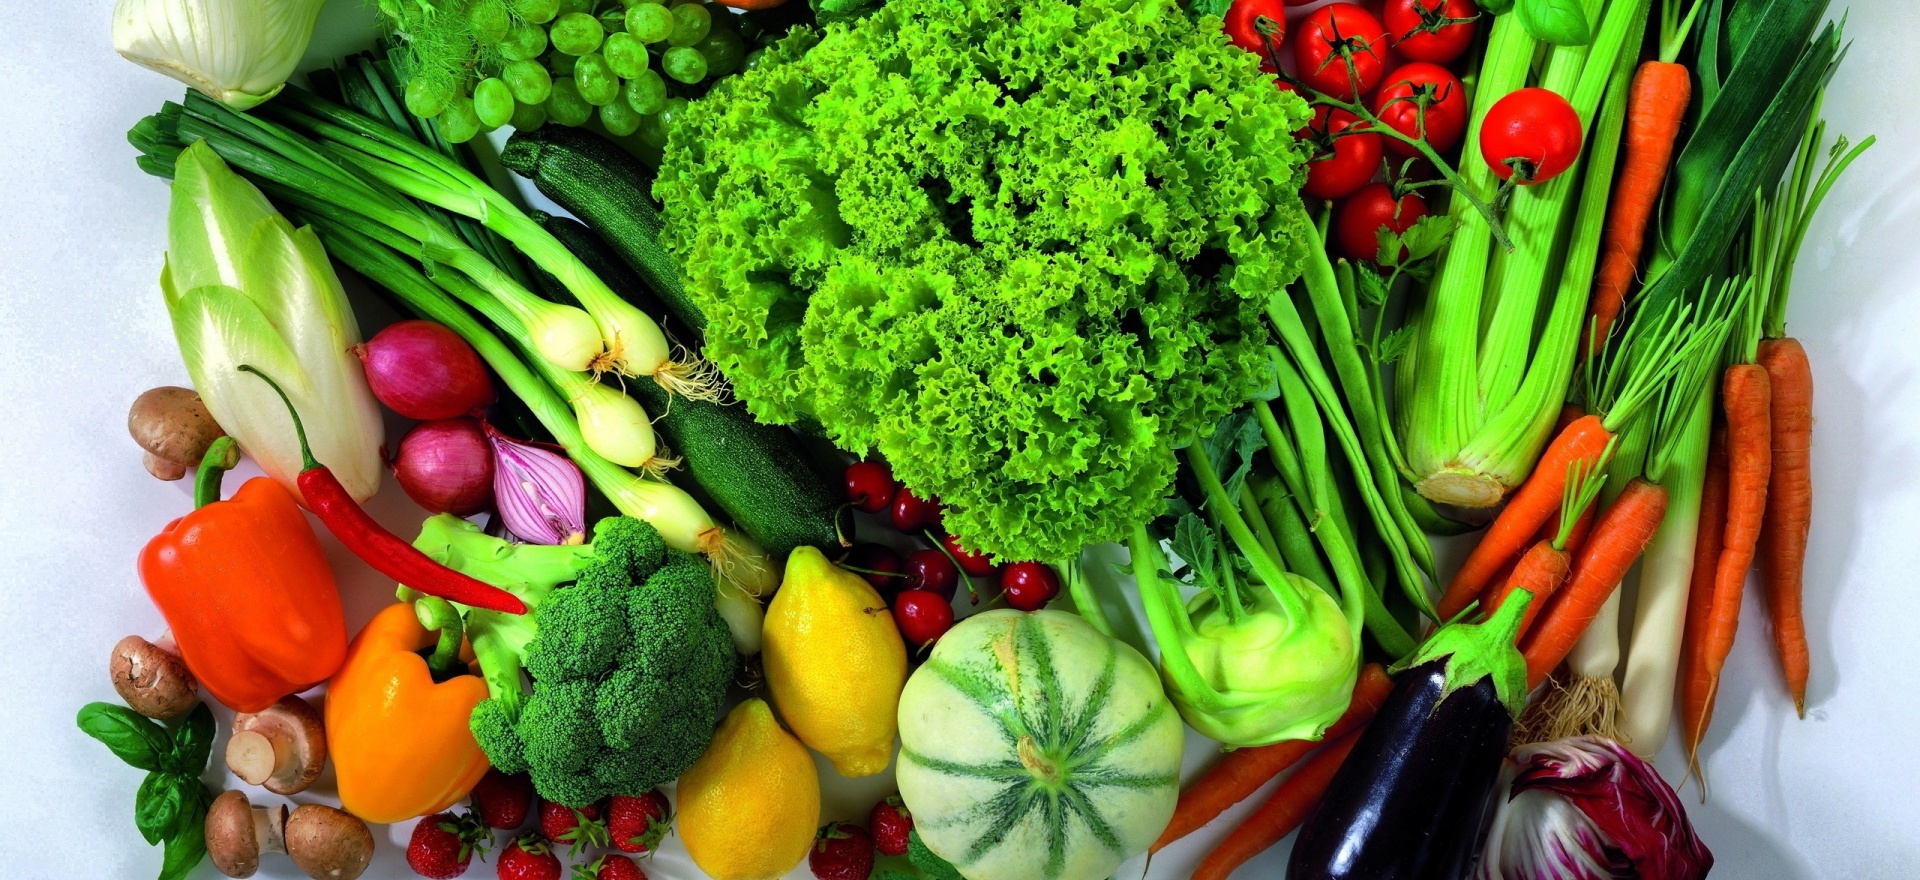 Notre rayon fruits et légumes